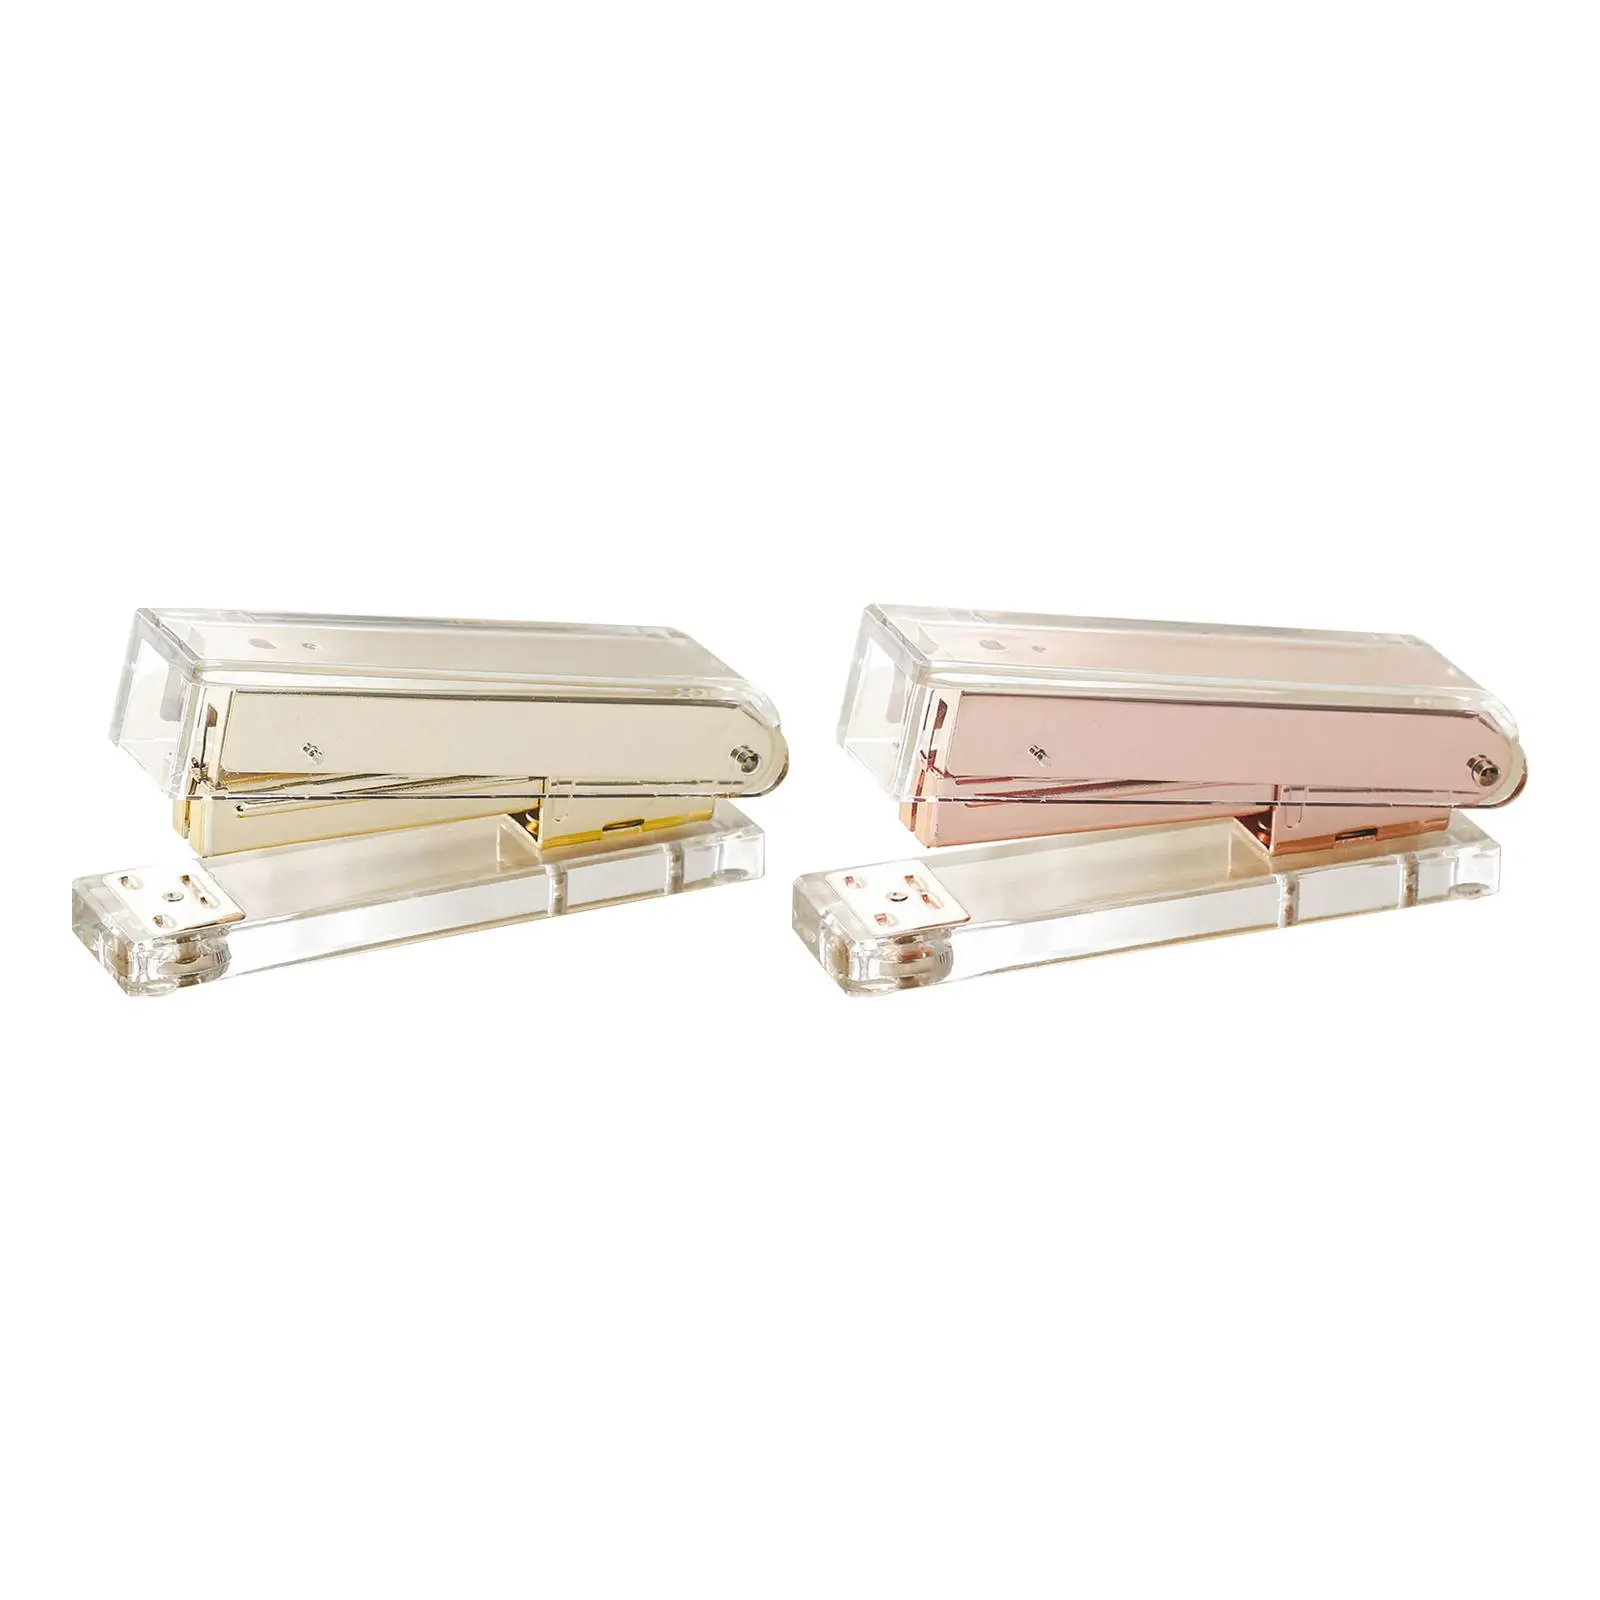 Rose Gold/Gold Desktop Stapler Stationery Accessories Gift Transparent Acrylic Standard Stapler Stapler for Home School Office